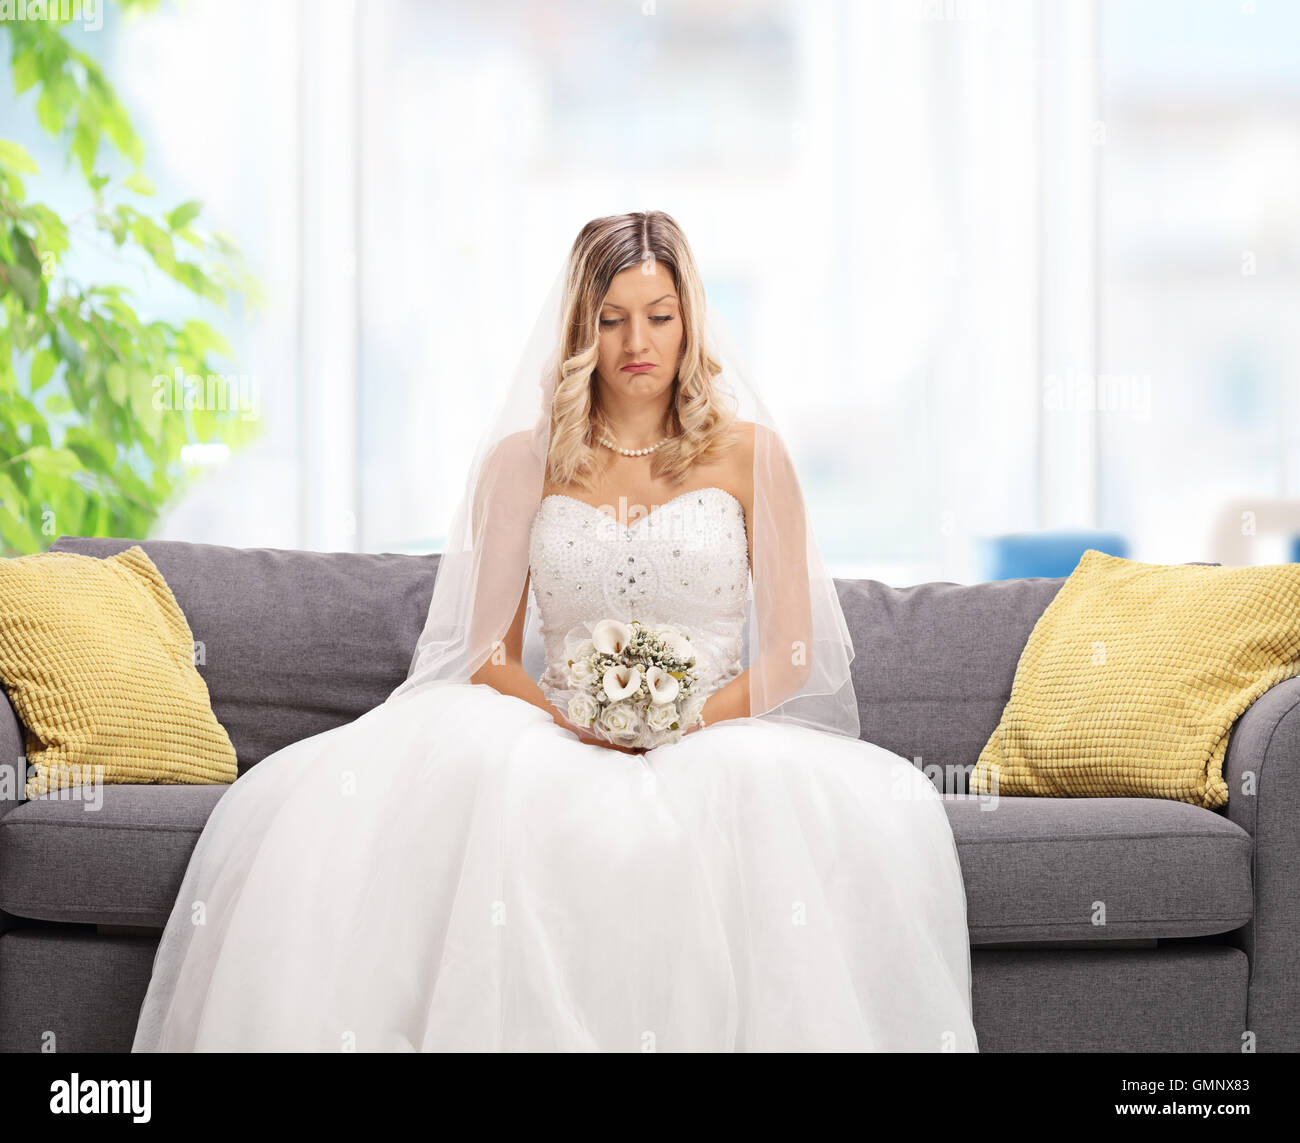 Déprimé bride sitting on a sofa Banque D'Images